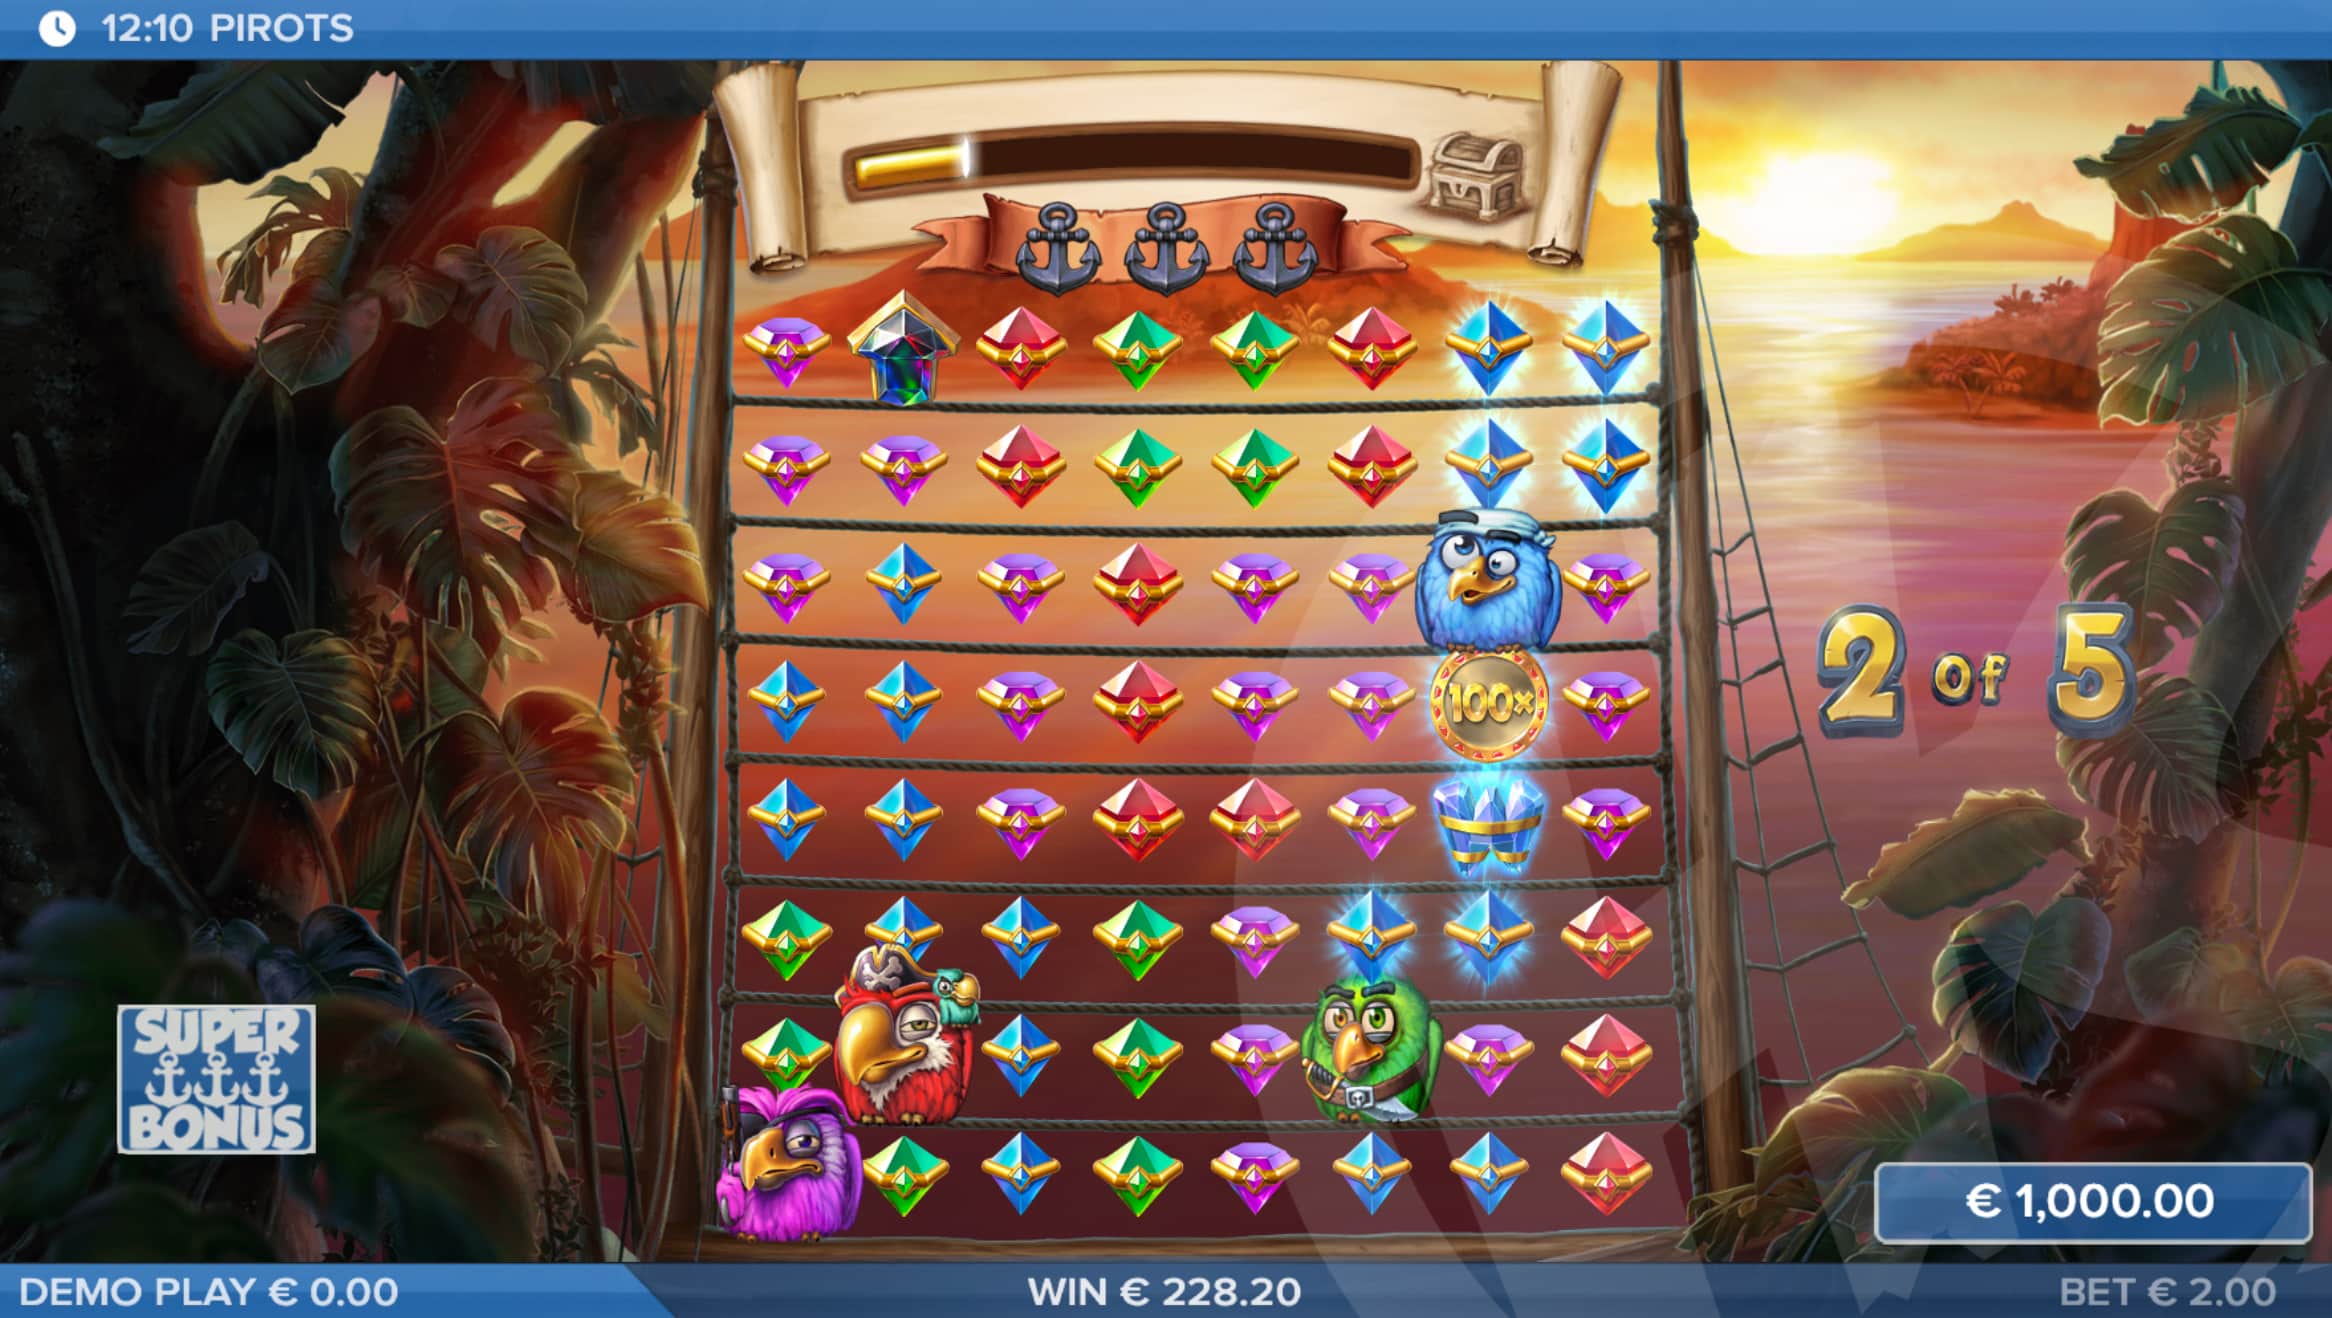 Land Feature Symbols Throughout Either Bonus. All Upgrade Symbols Upgrade All Gems In the Super Bonus